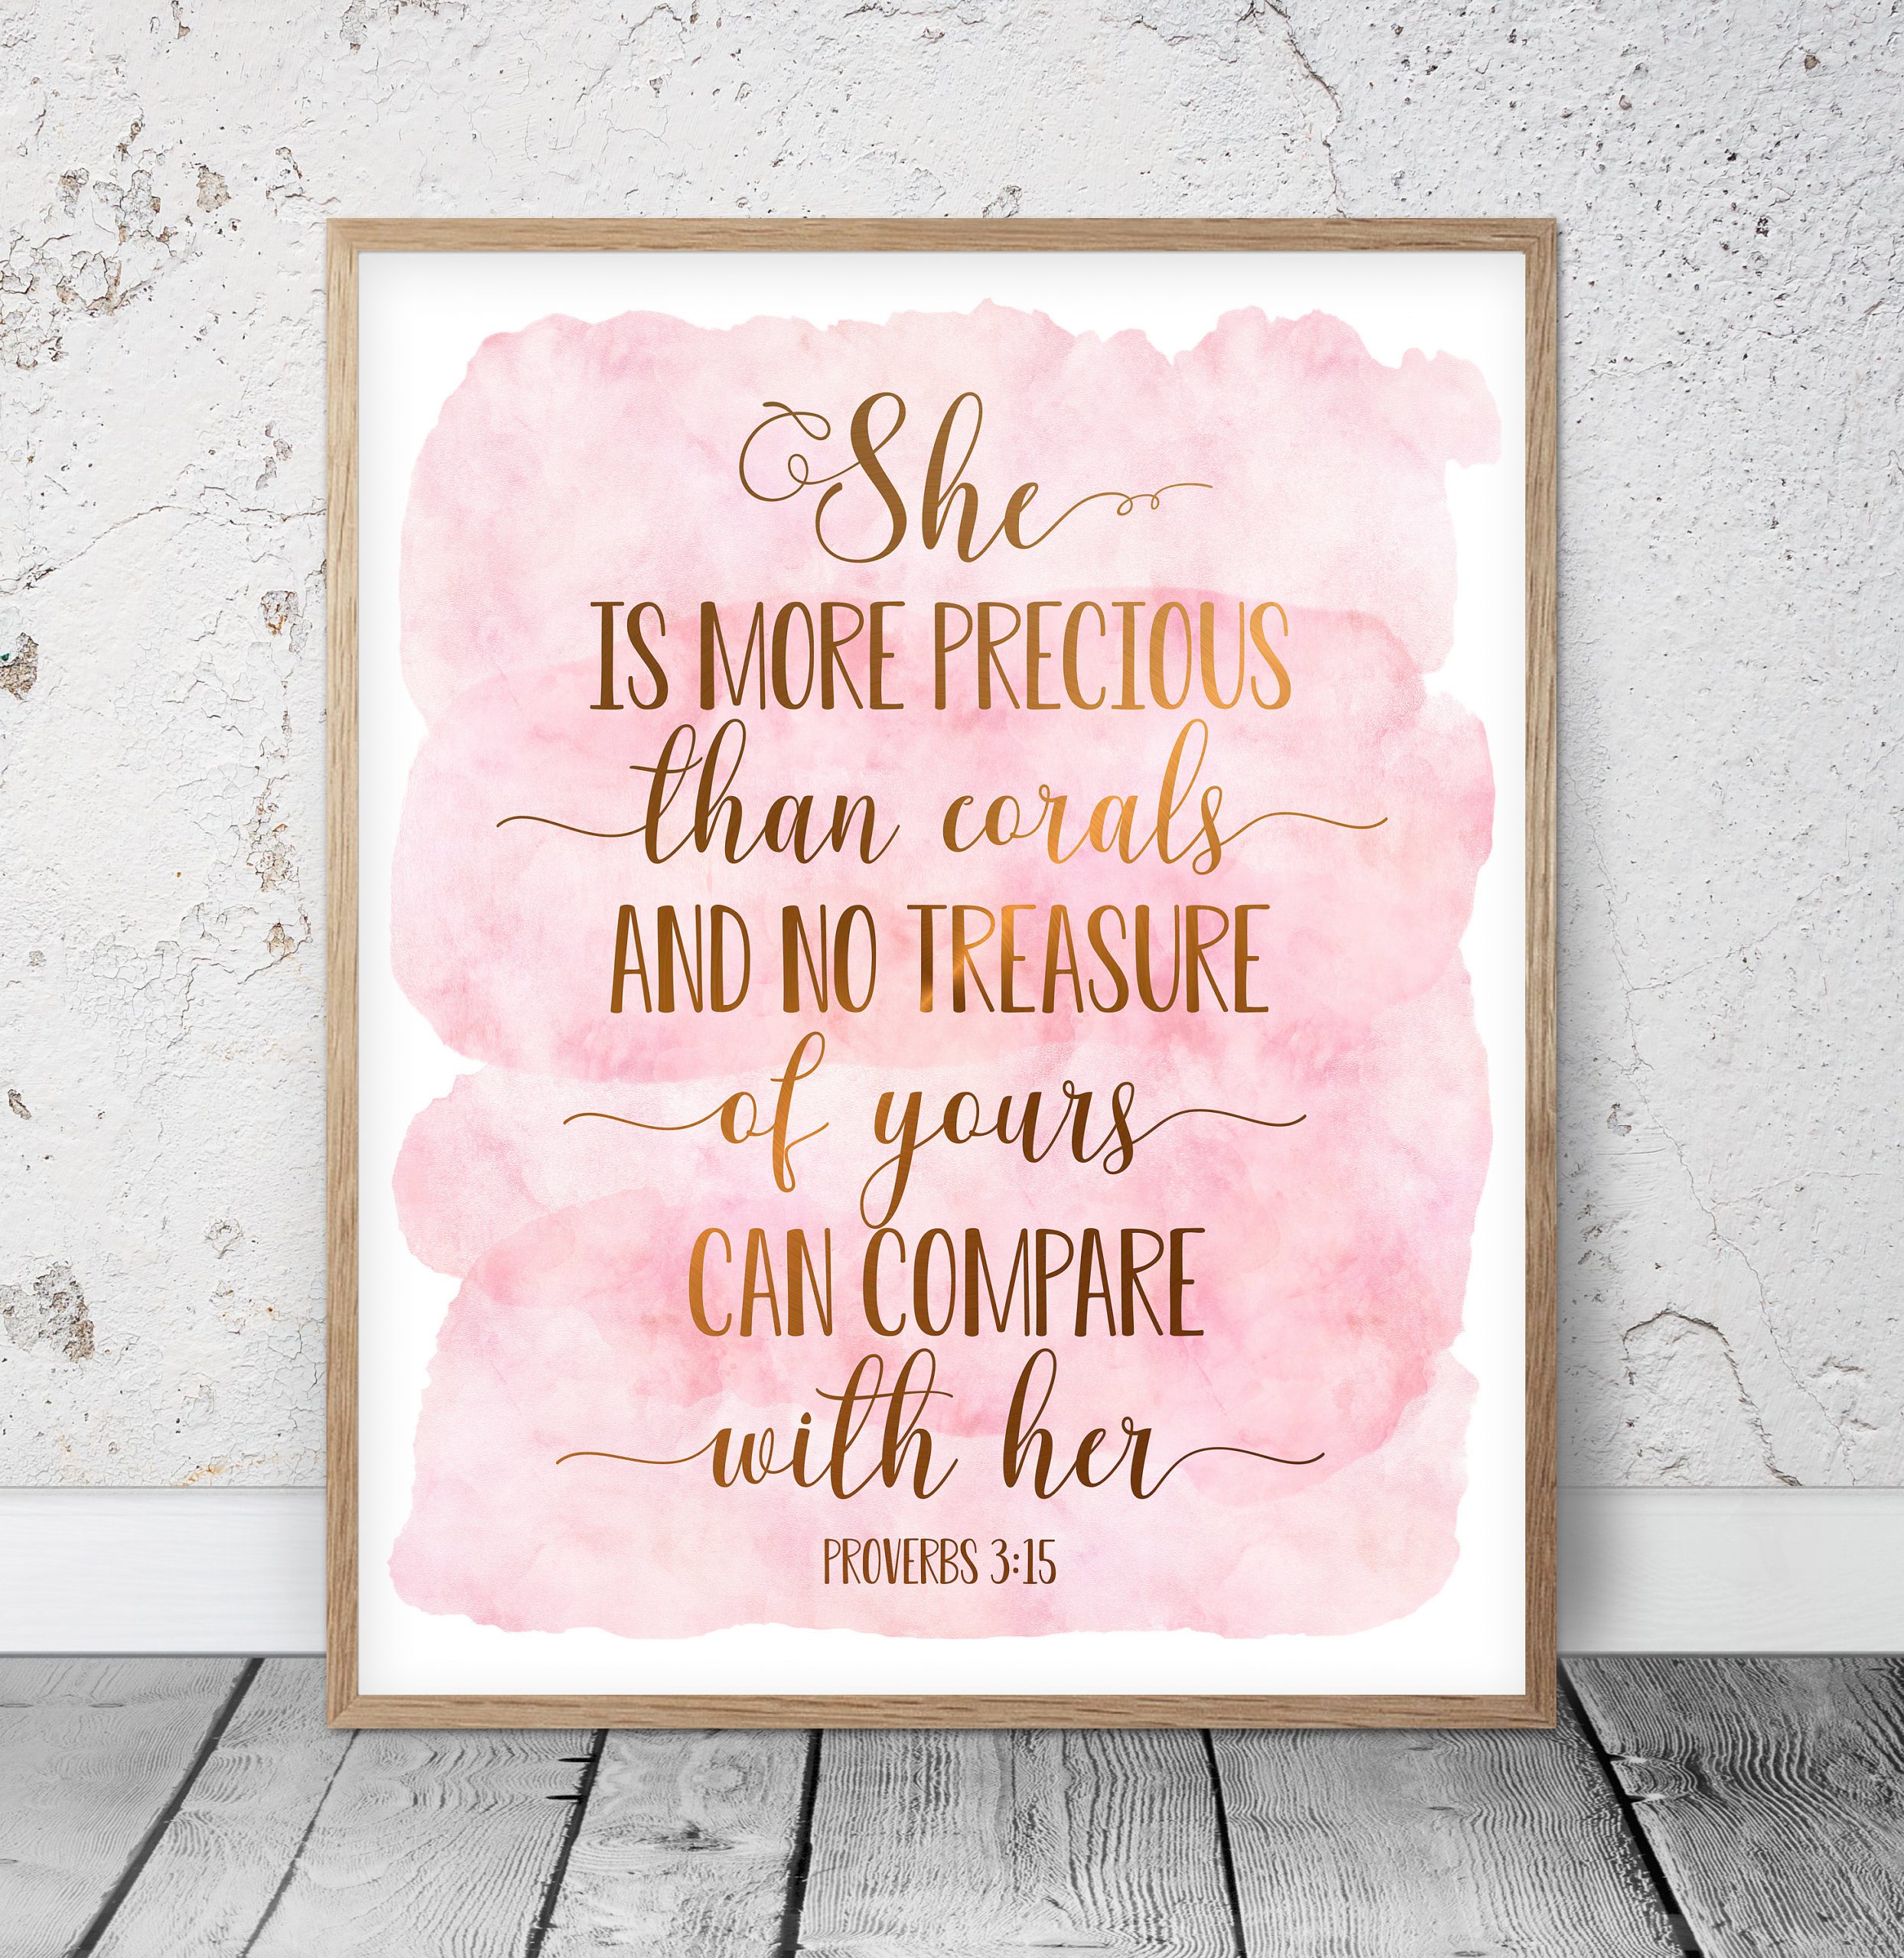 She Is More Precious Than Corals, Proverbs 3:15, Bible Verse Printable Wall Art,Nursery Decor Girl